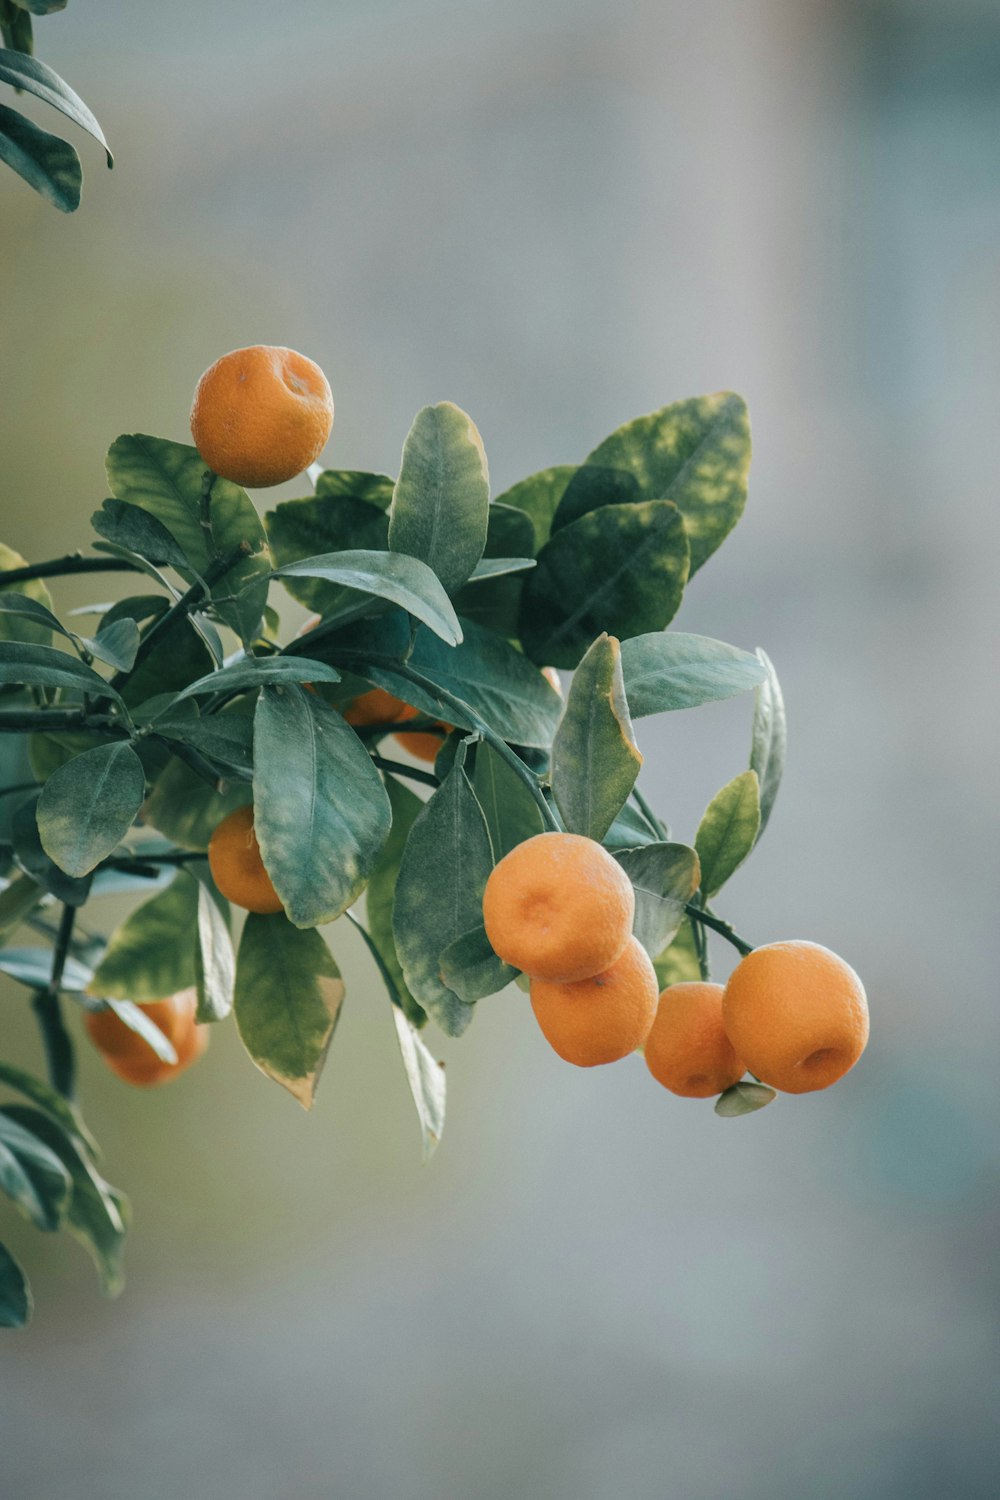 orange fruit on tree during daytime